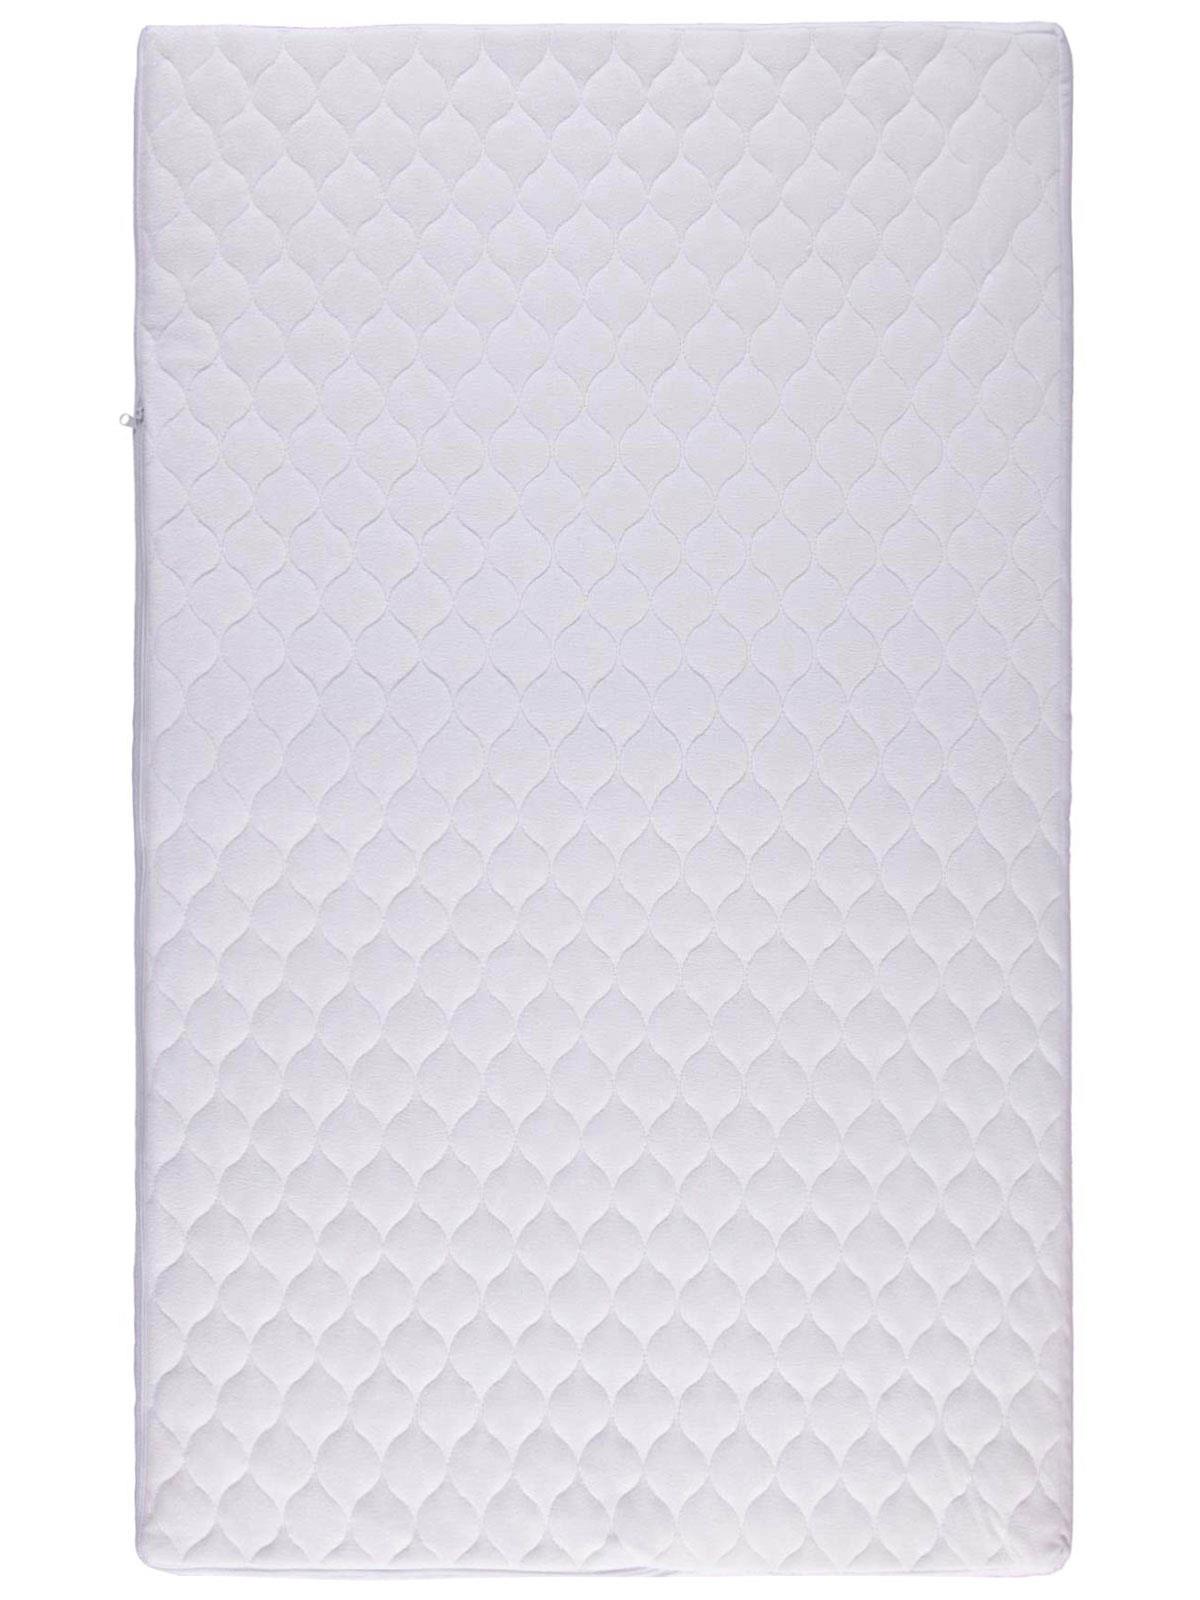 Kujju Alezli Pamuk Oyun Parkı Yatağı 70x120 cm Beyaz